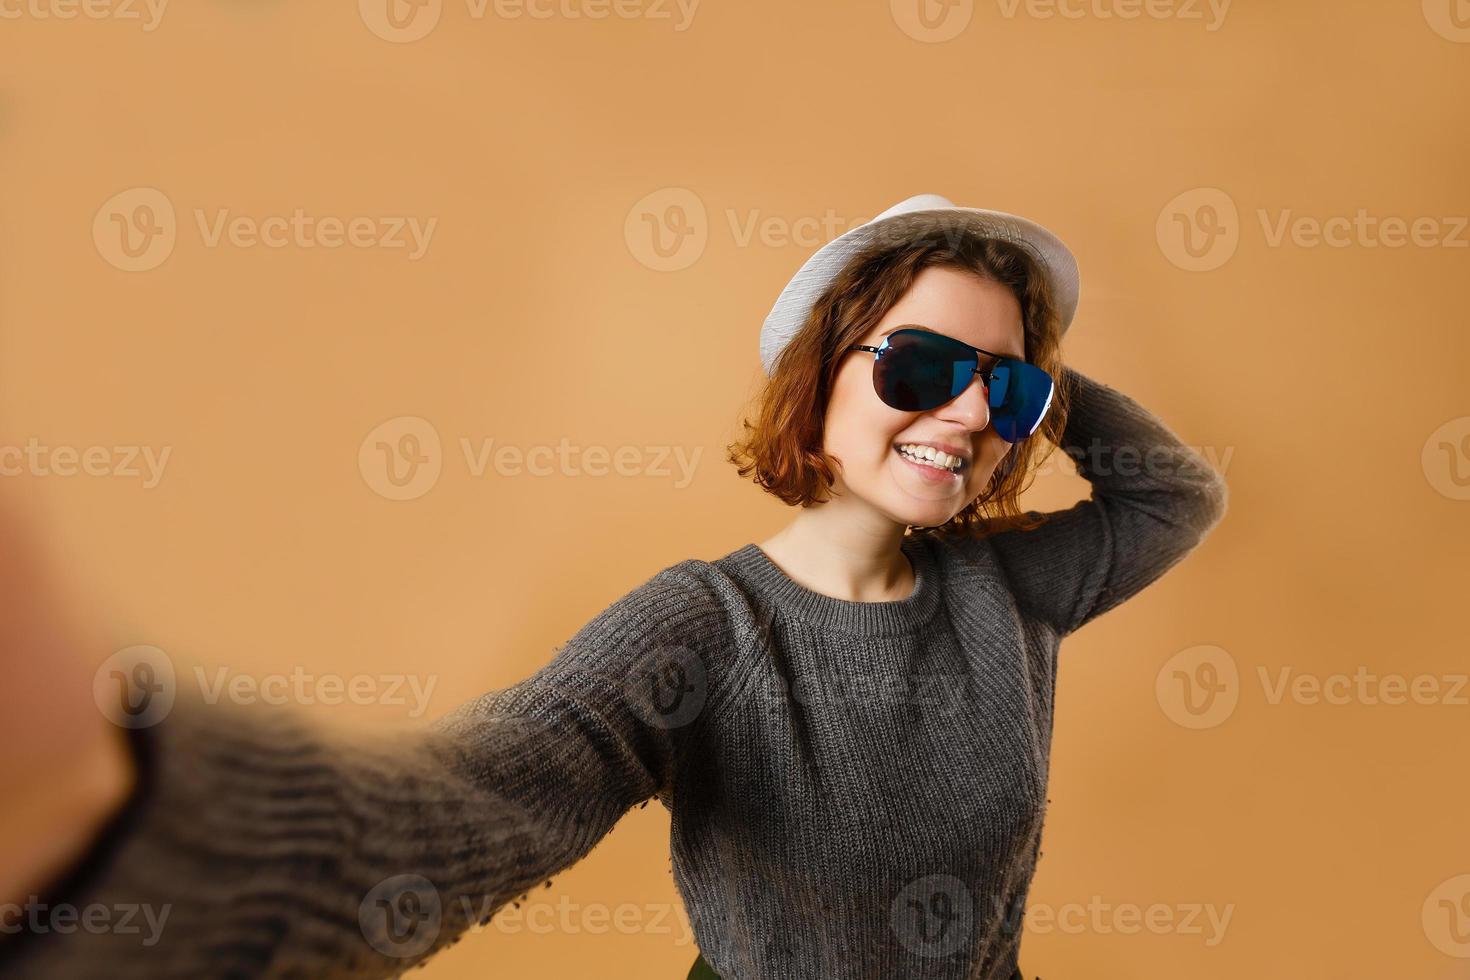 autorretrato de uma mulher legal, incrível, bonita, positiva e sexy tirando selfie com as duas mãos na câmera frontal, mandando um beijo no ar para o namorado, tendo roupa de bolinhas, isolada em fundo amarelo foto